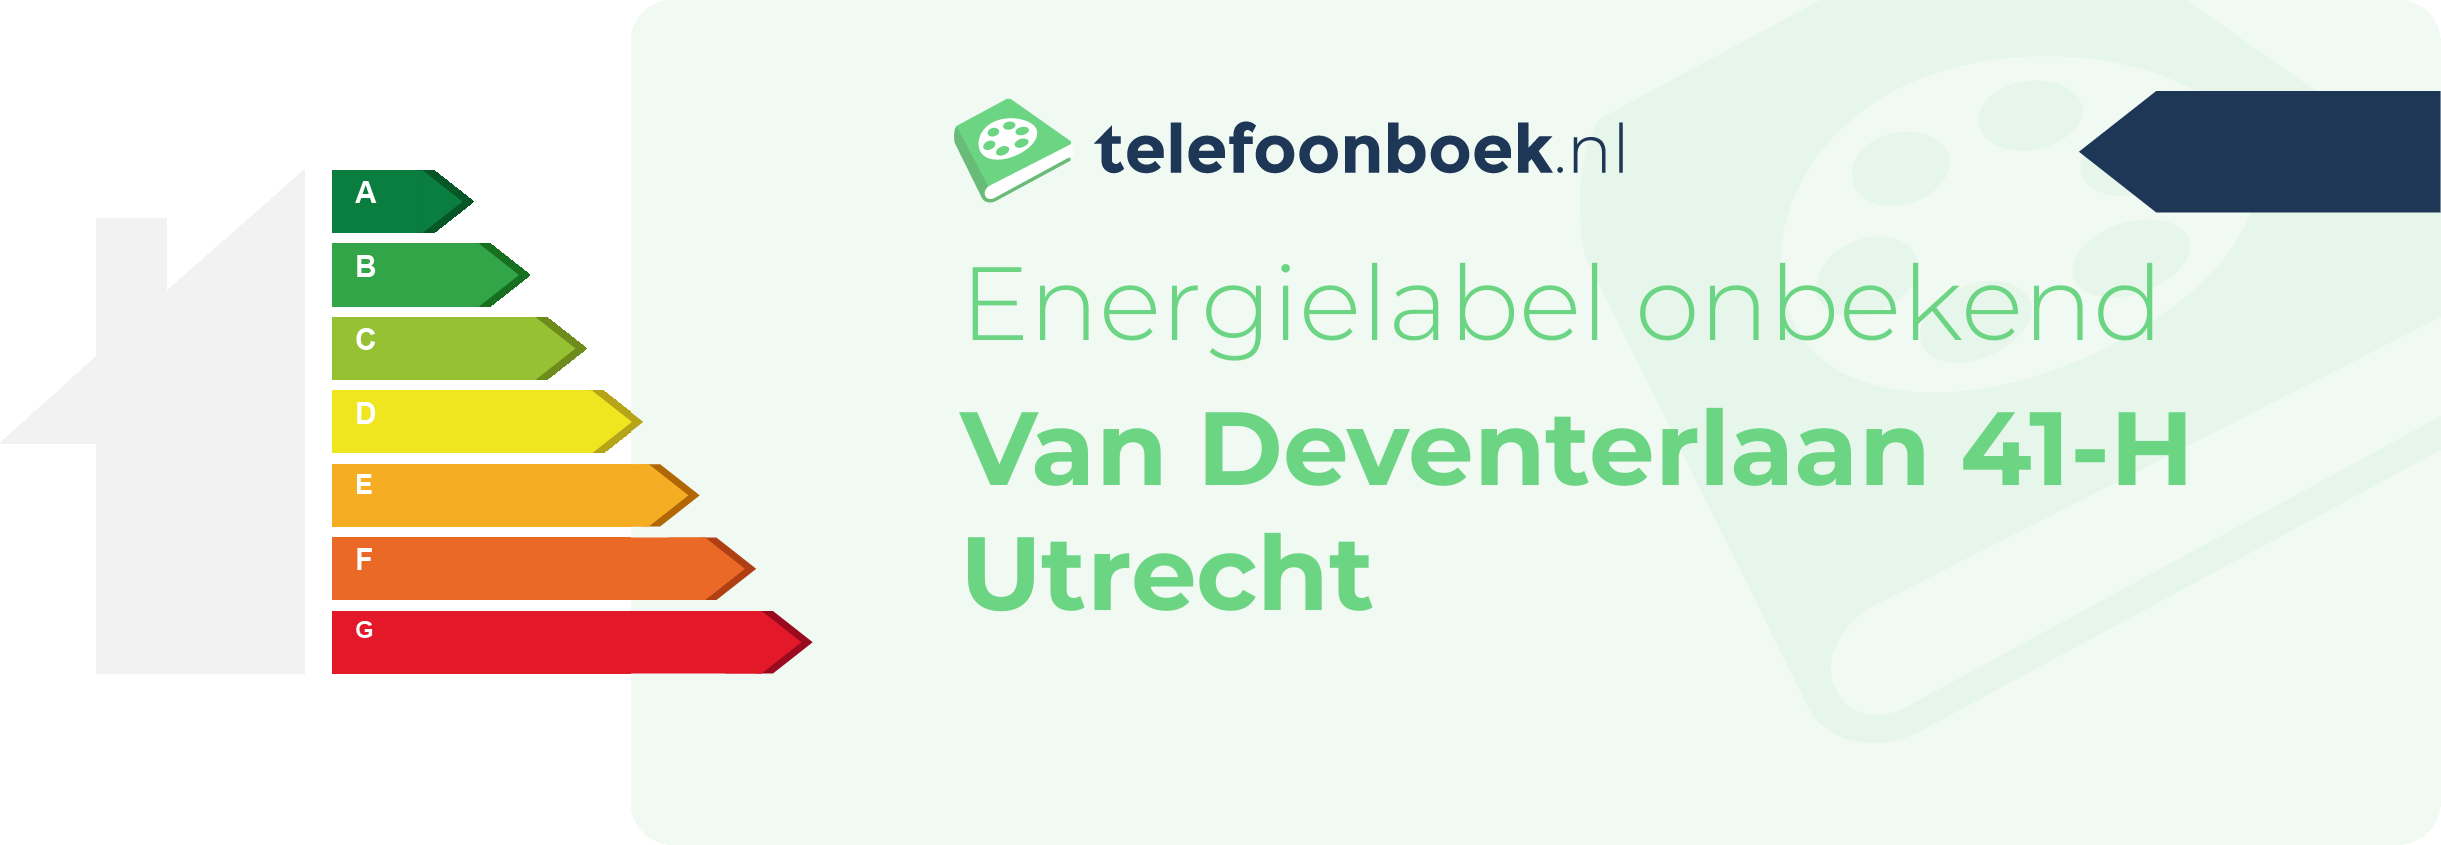 Energielabel Van Deventerlaan 41-H Utrecht